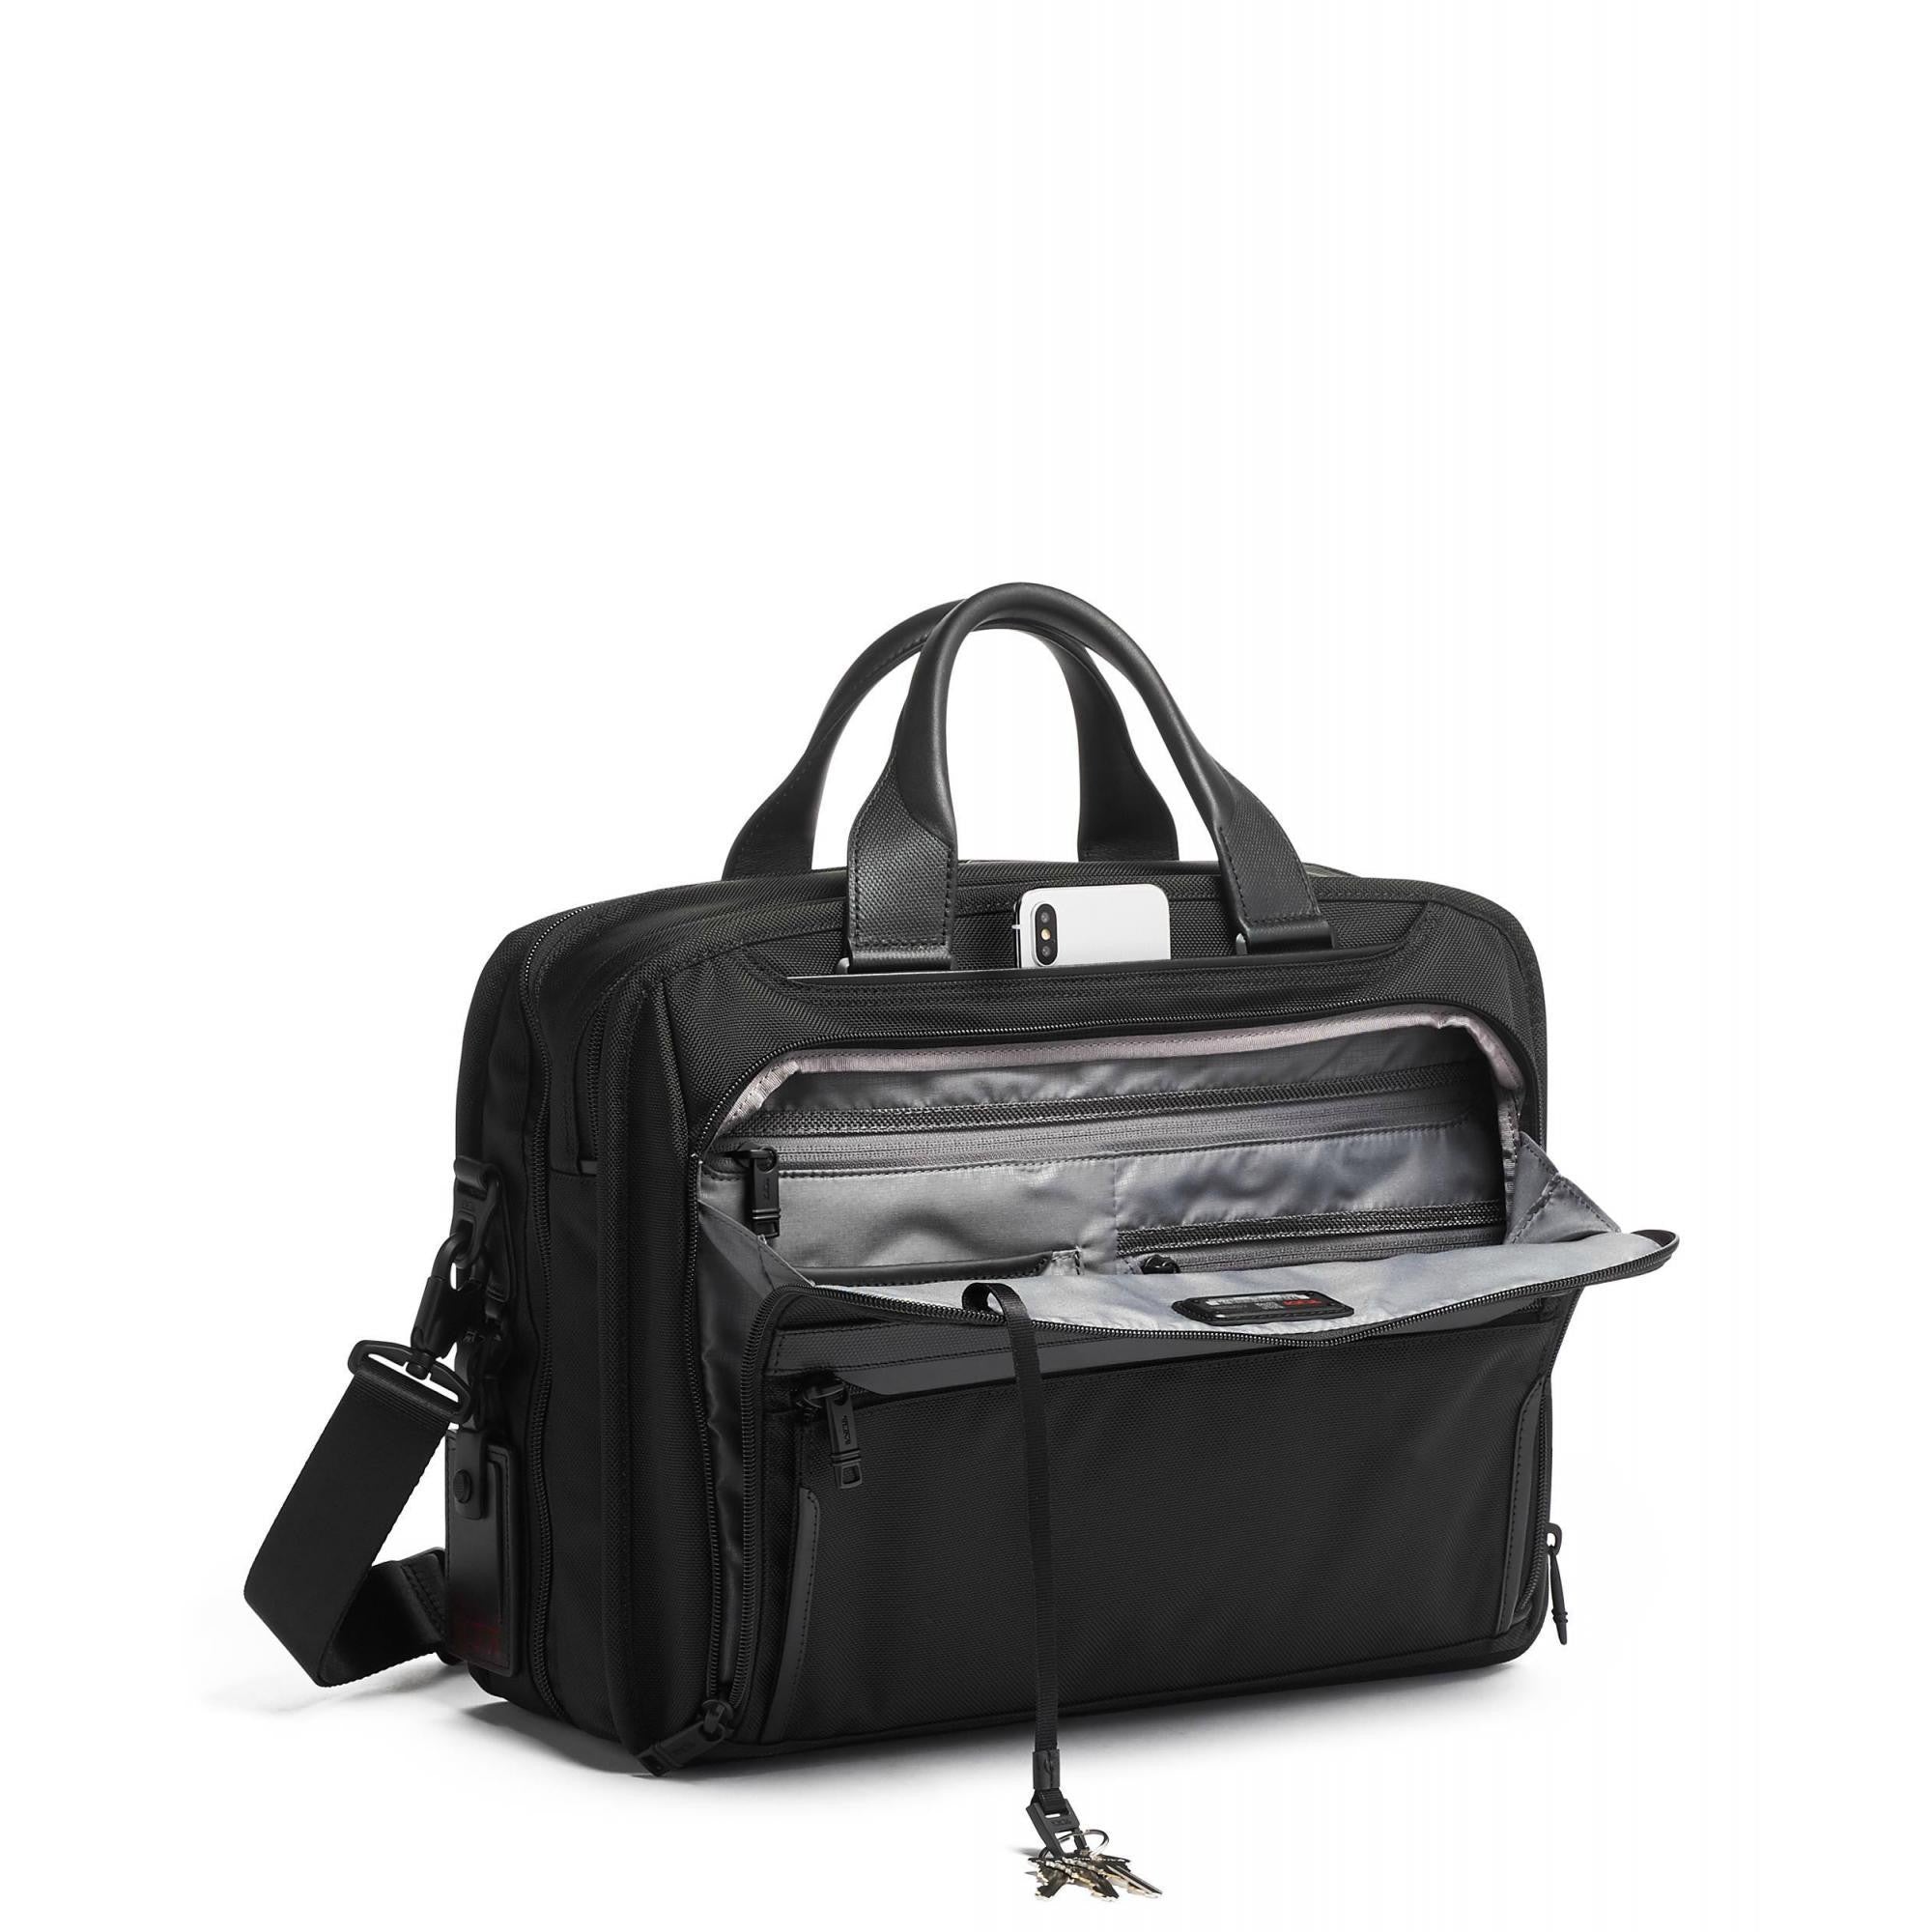 TUMI Alpha 3 Organizer Brief – Luggage Pros